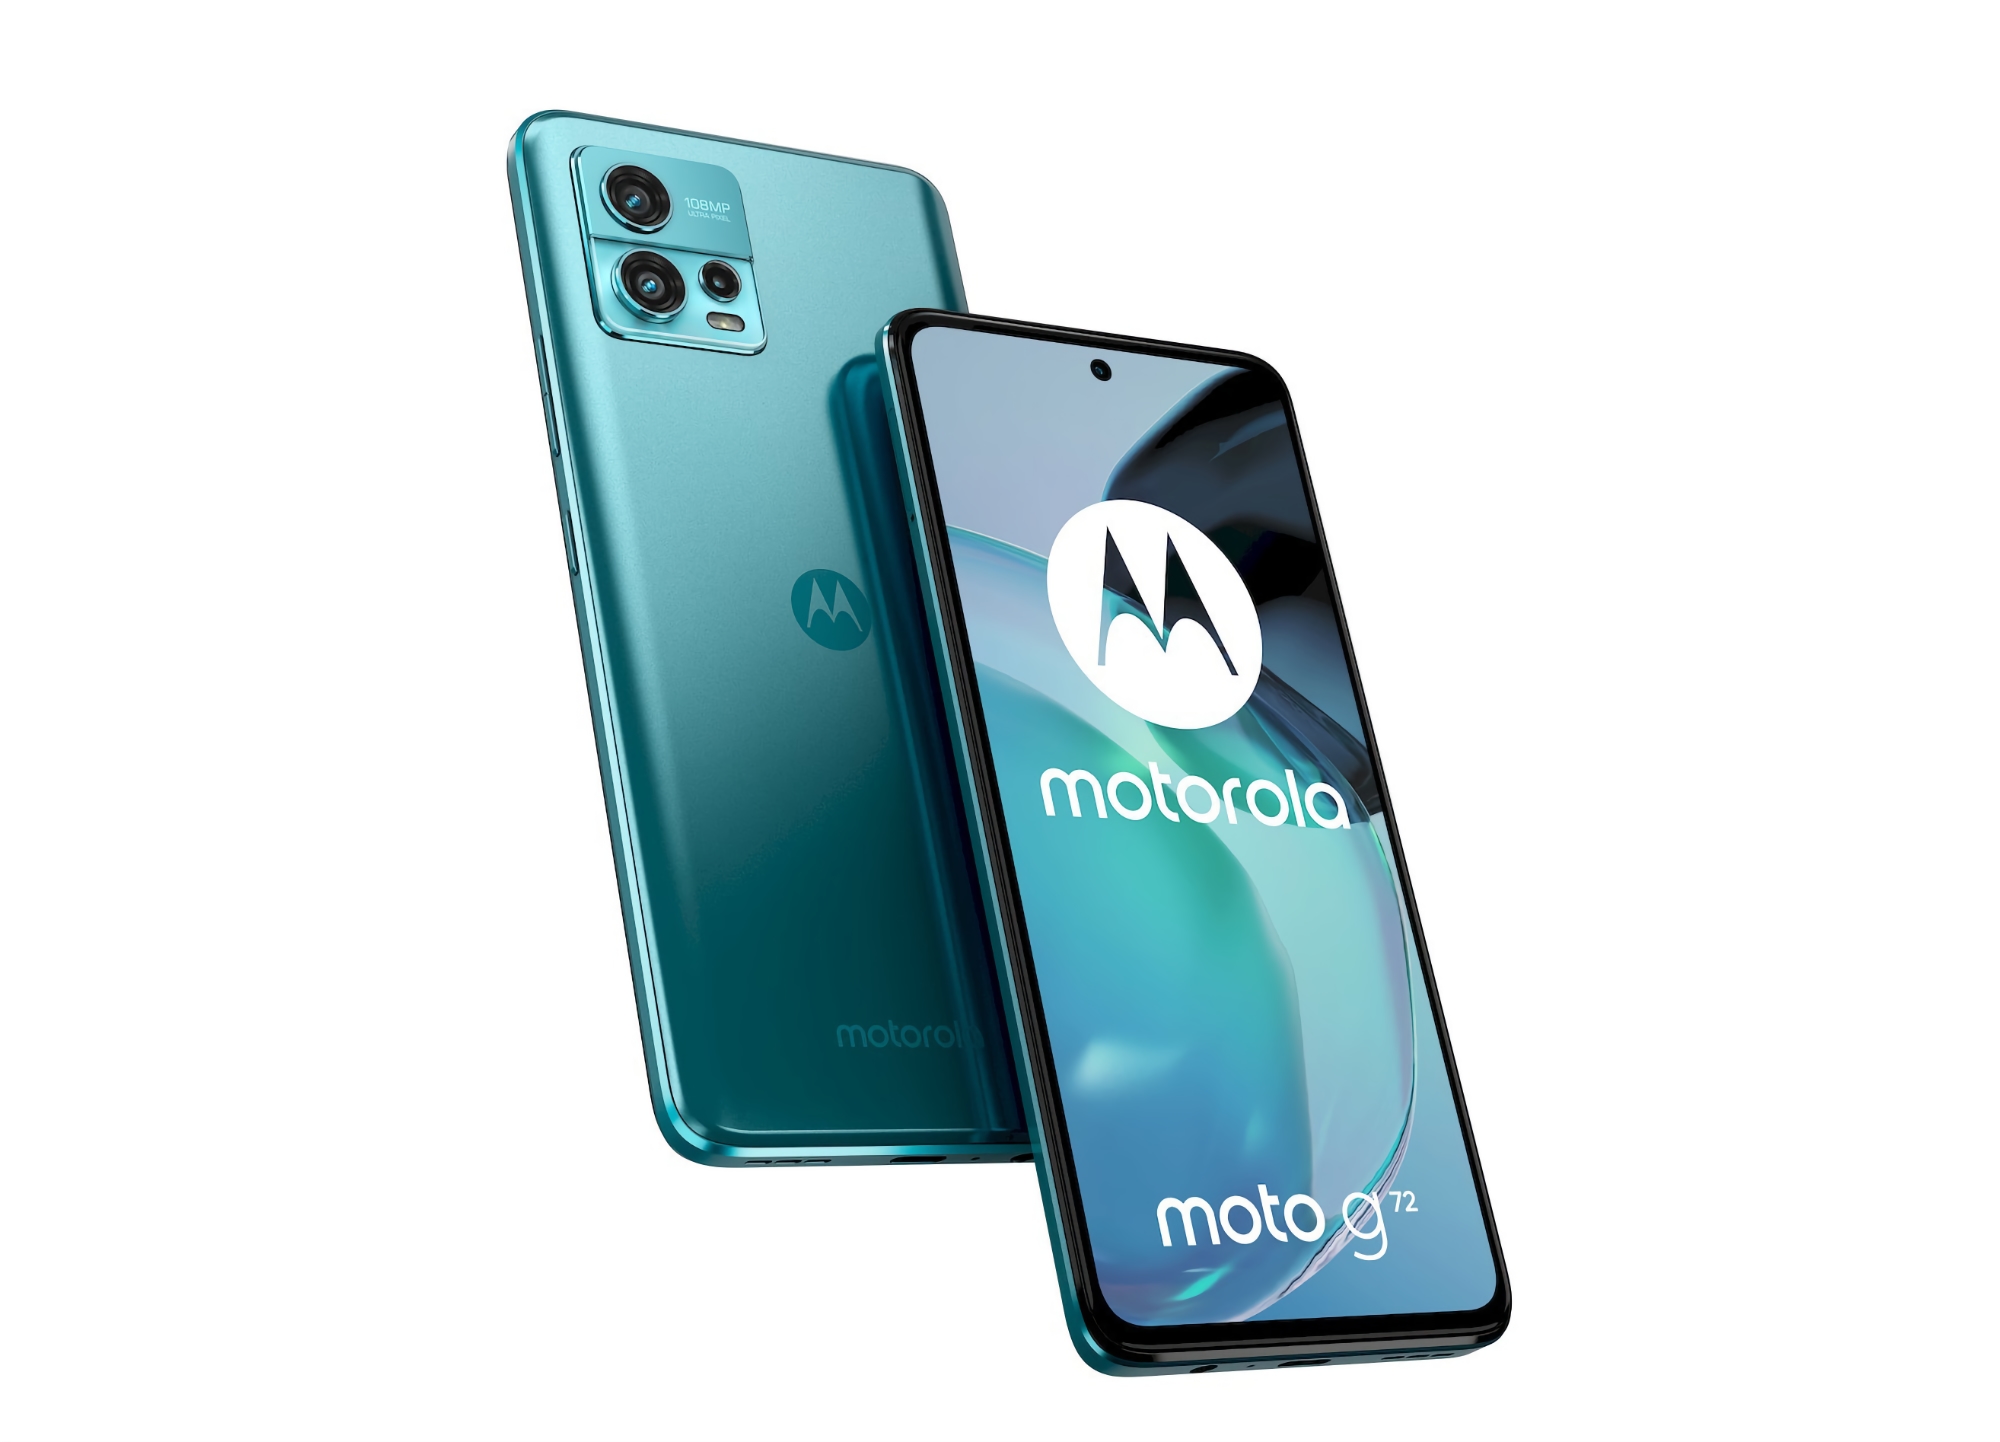 Motorola hat das Moto G72 in Europa vorgestellt: MediaTek Helio G99 Chip, 108 MP Kamera und IP52 Schutz für 260 Euro